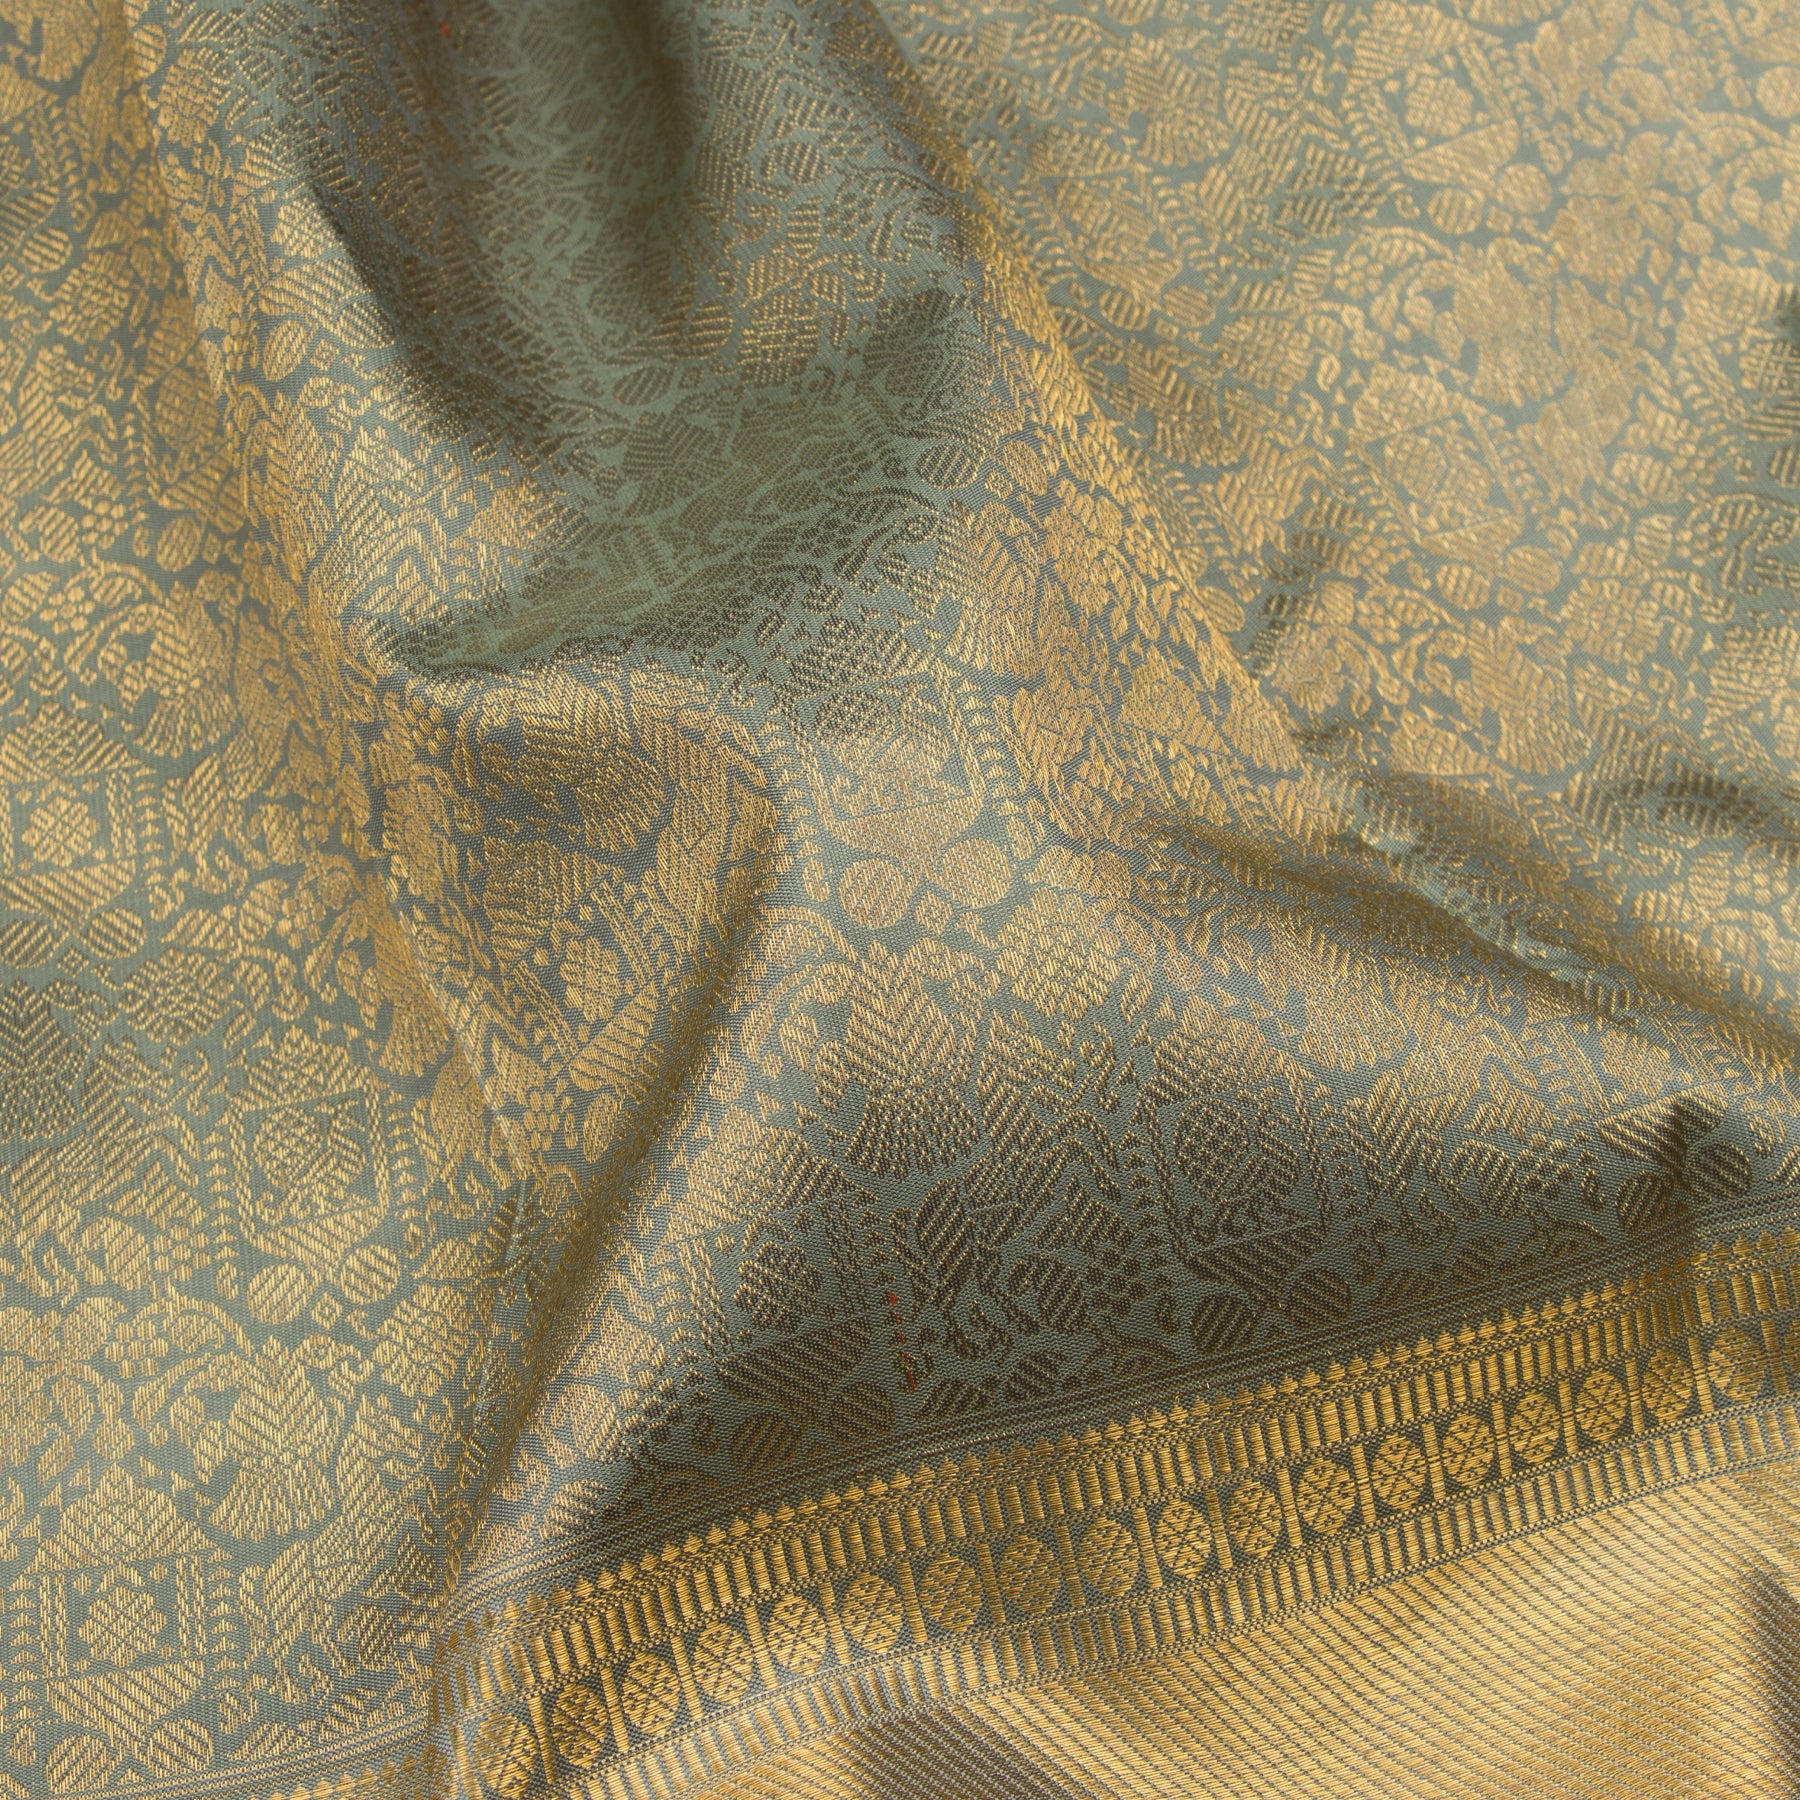 Kanakavalli Kanjivaram Silk Sari 23-110-HS001-08340 - Fabric View